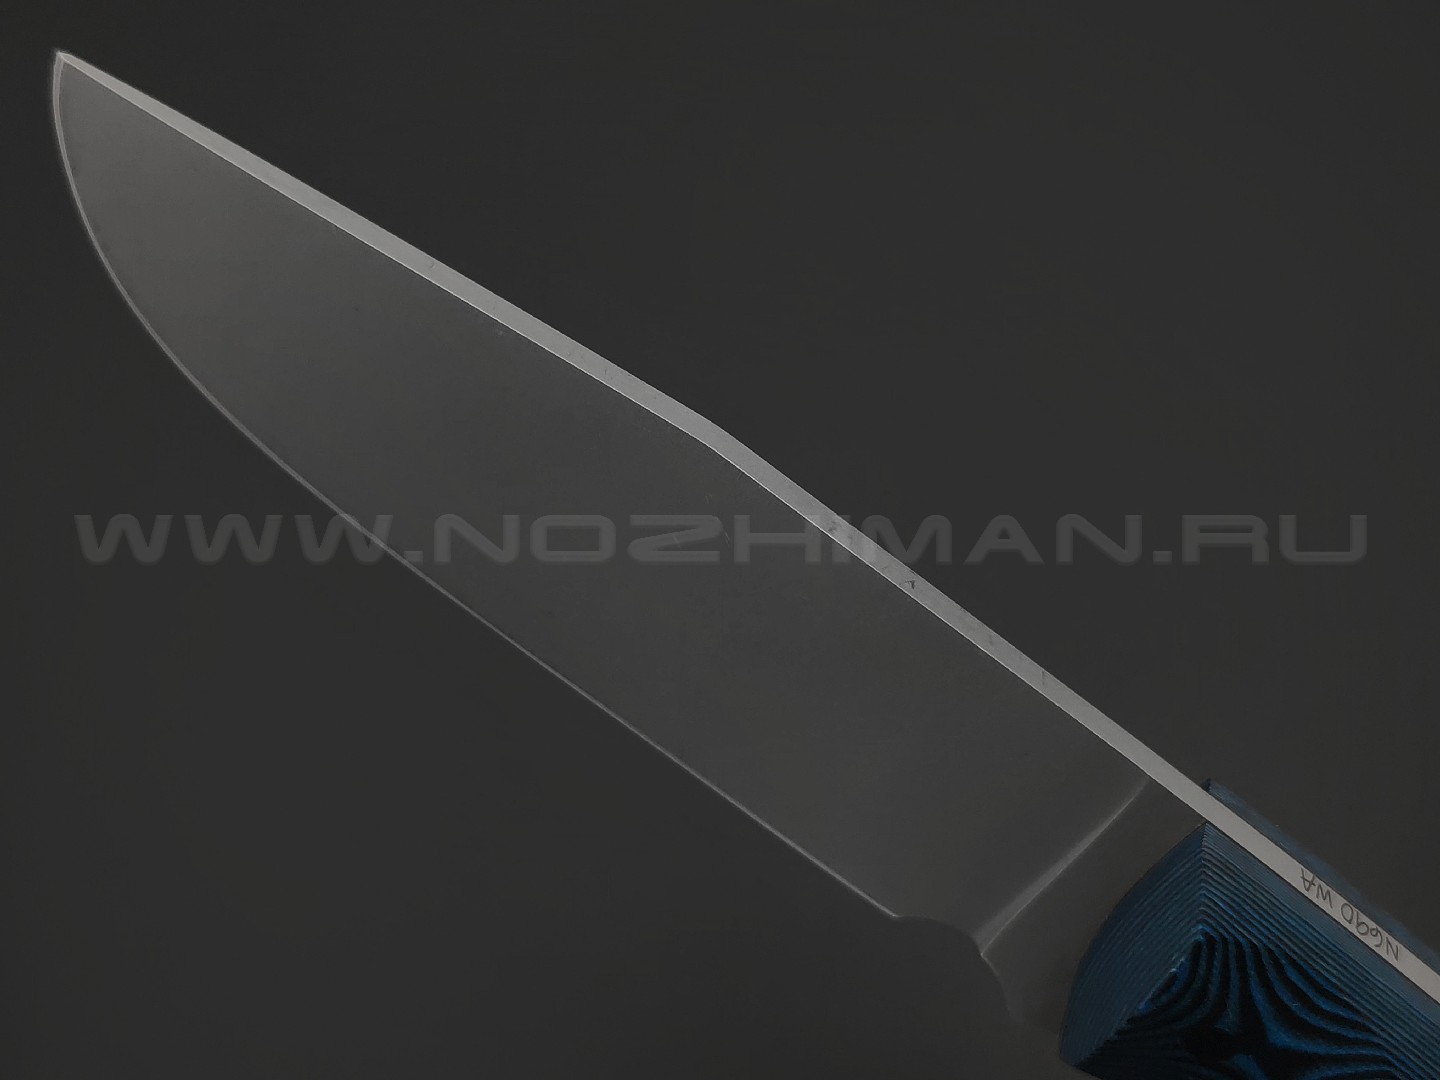 Волчий Век нож Ямской сталь N690 WA stonewash, рукоять G10 black & blue, карбон